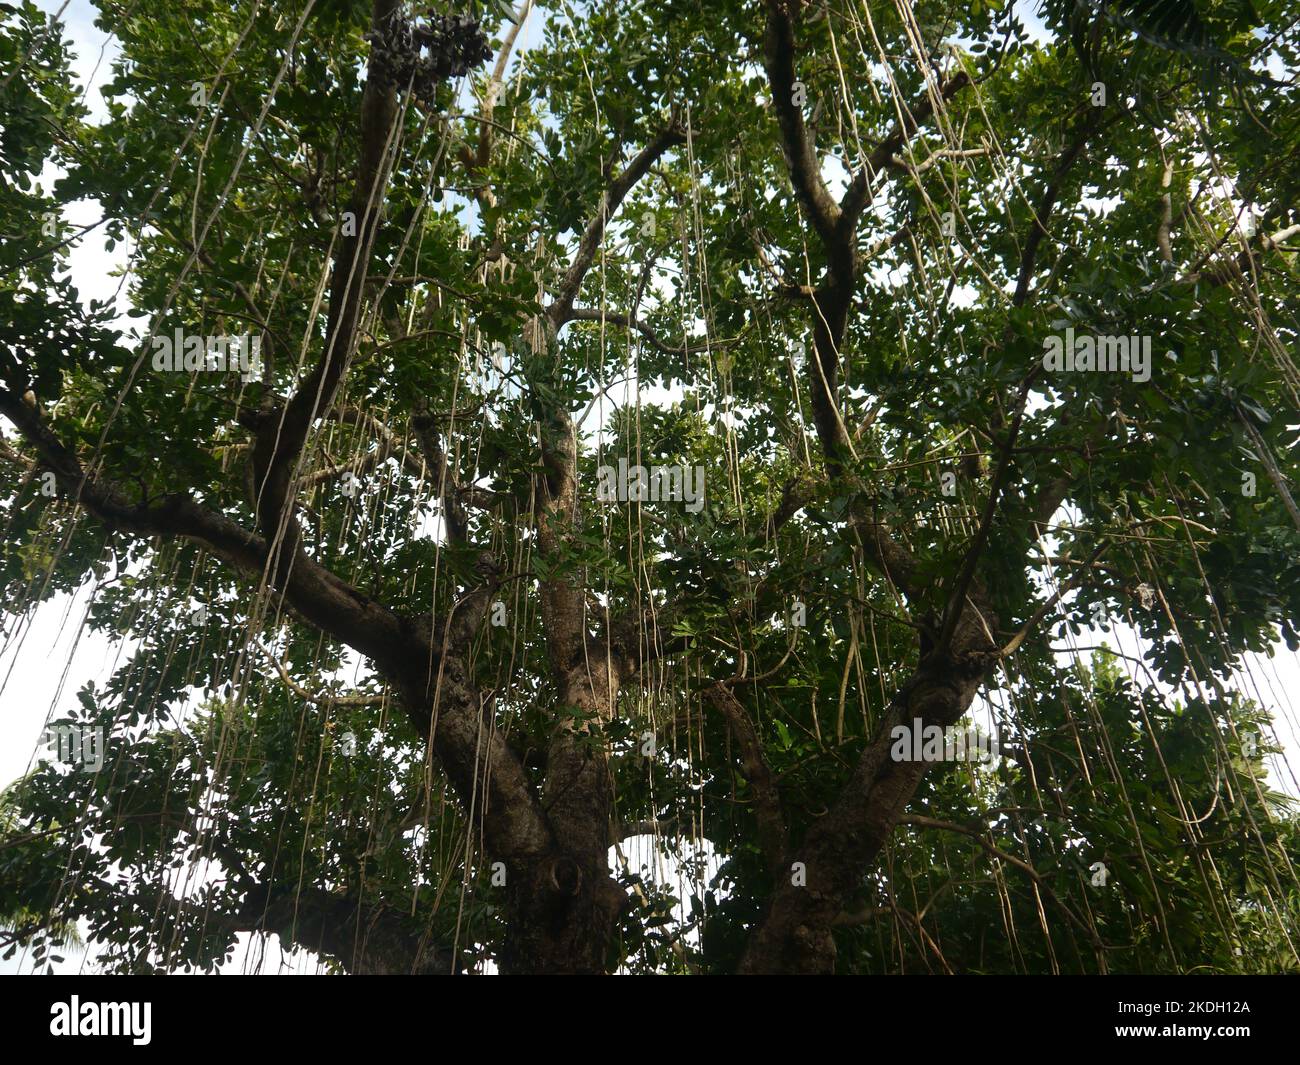 Forti rami d'albero con liana che si risvegliano, radice aerea Foto Stock